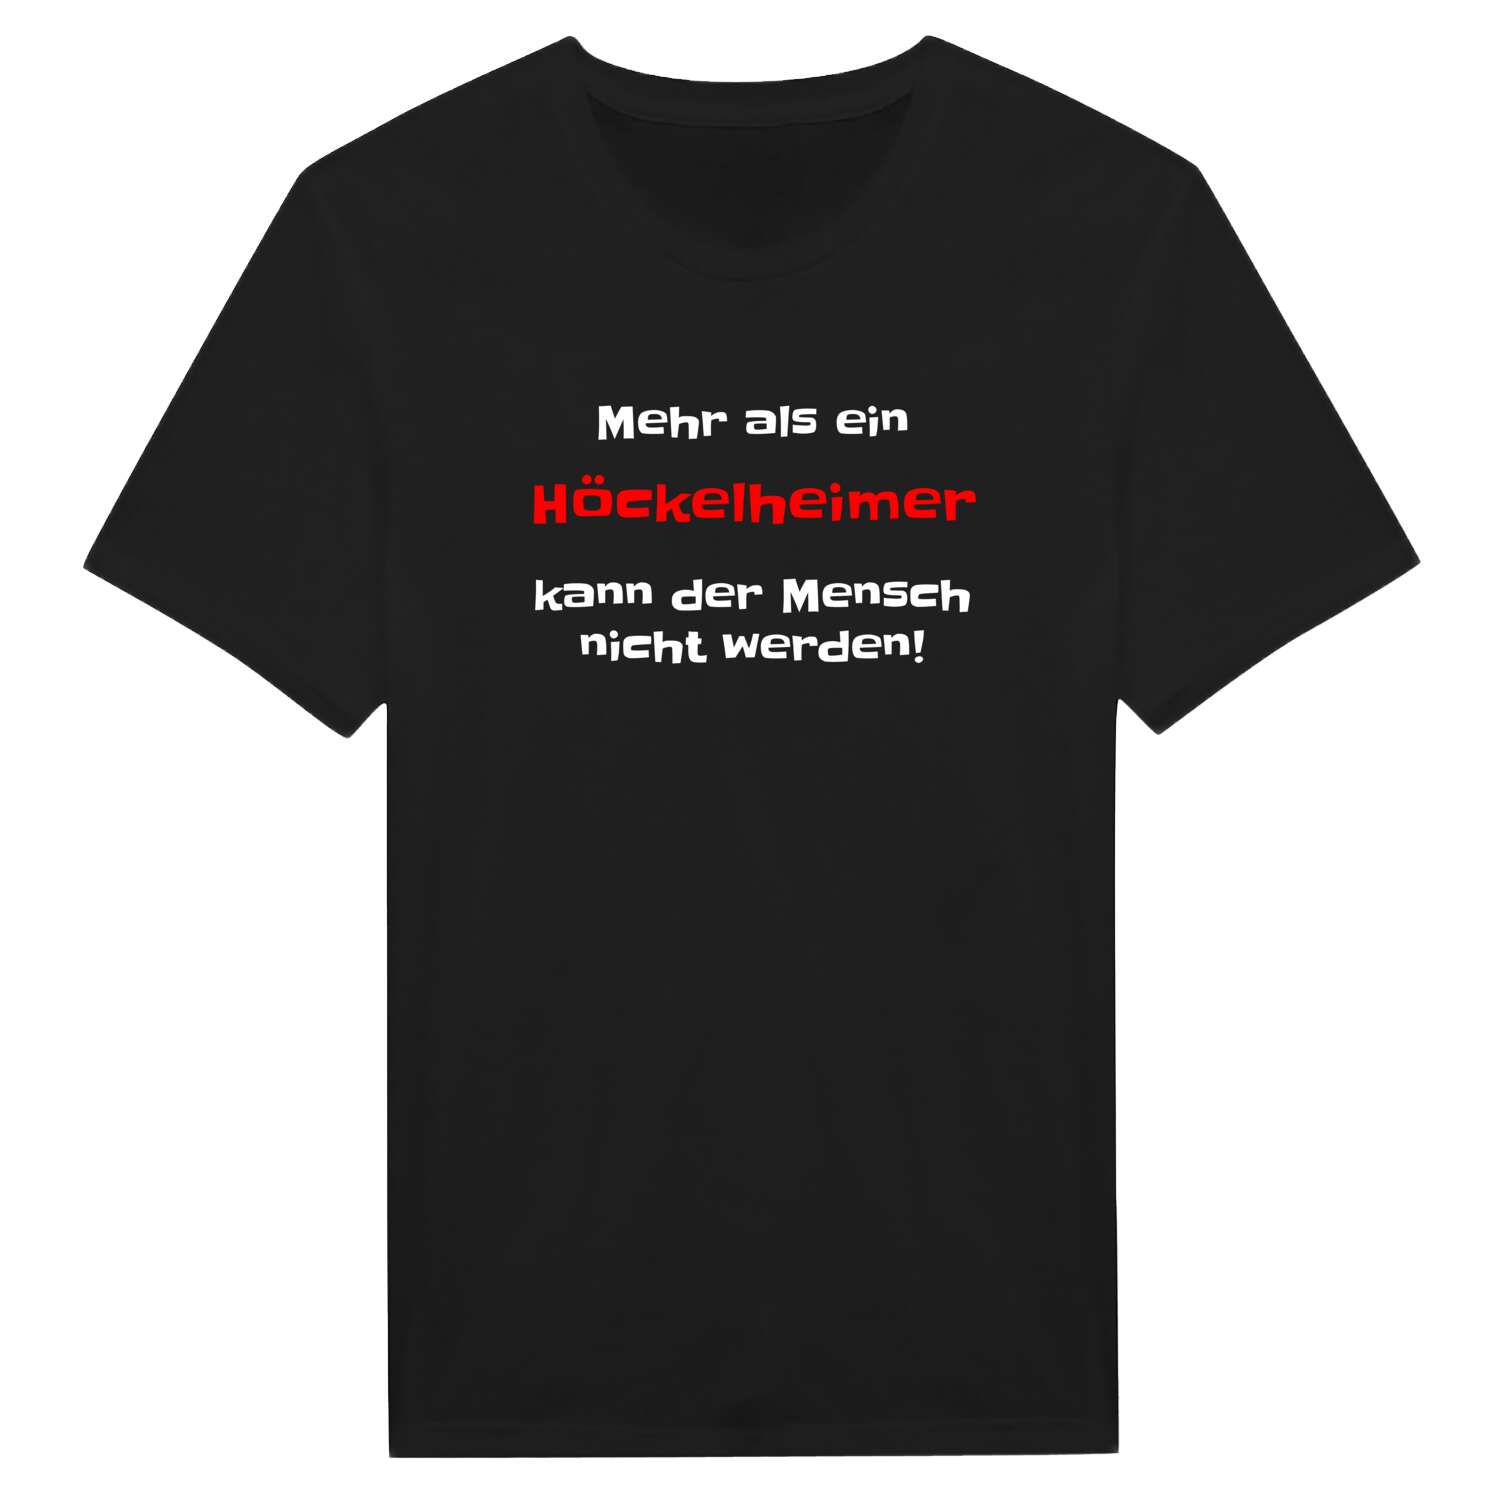 Höckelheim T-Shirt »Mehr als ein«